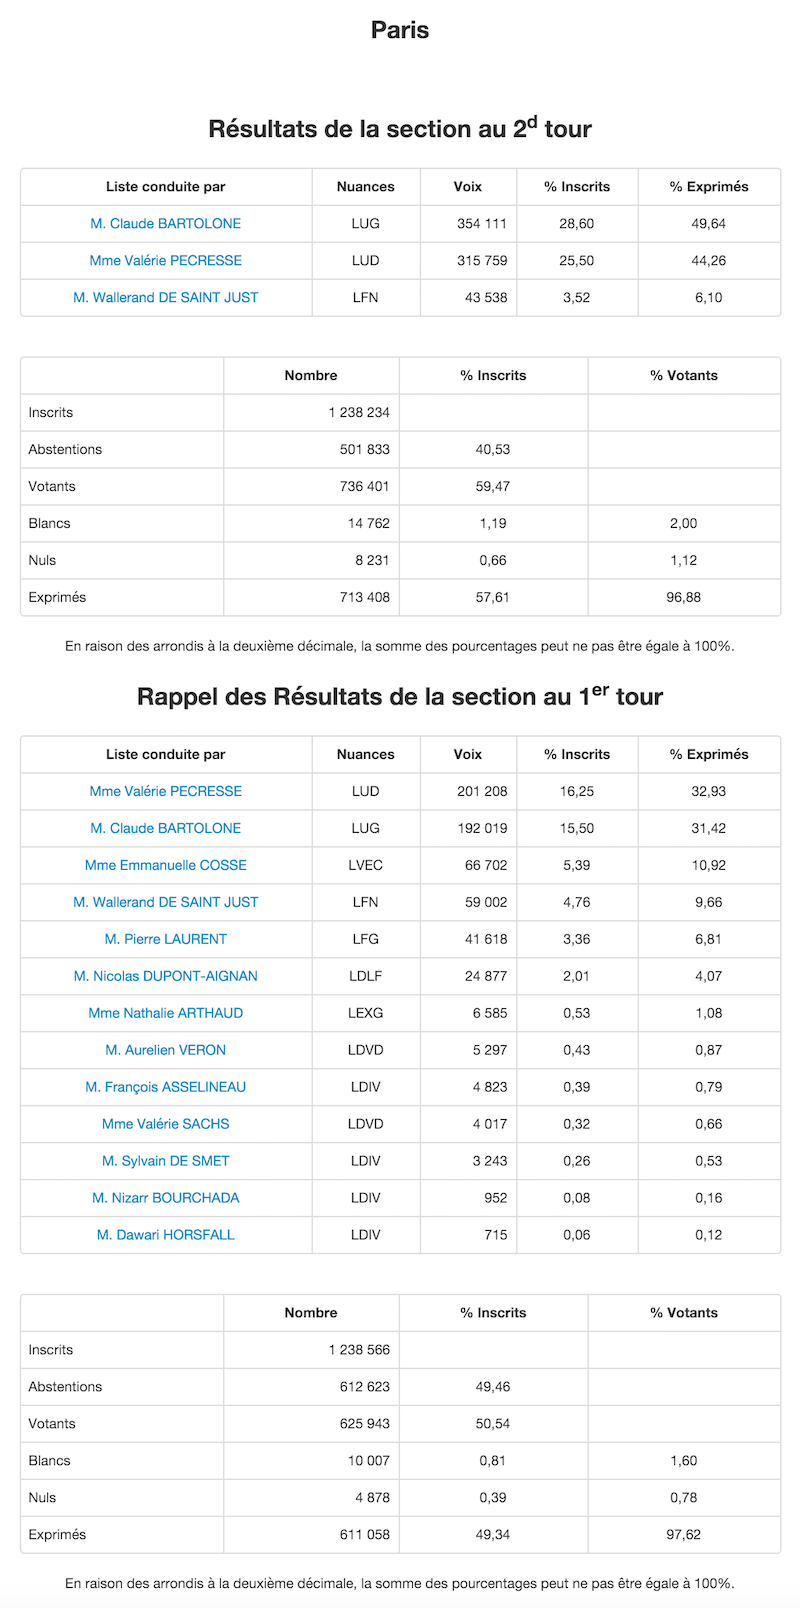 Régionales 2015 et 2010 dans le 20e arrondissement de Paris